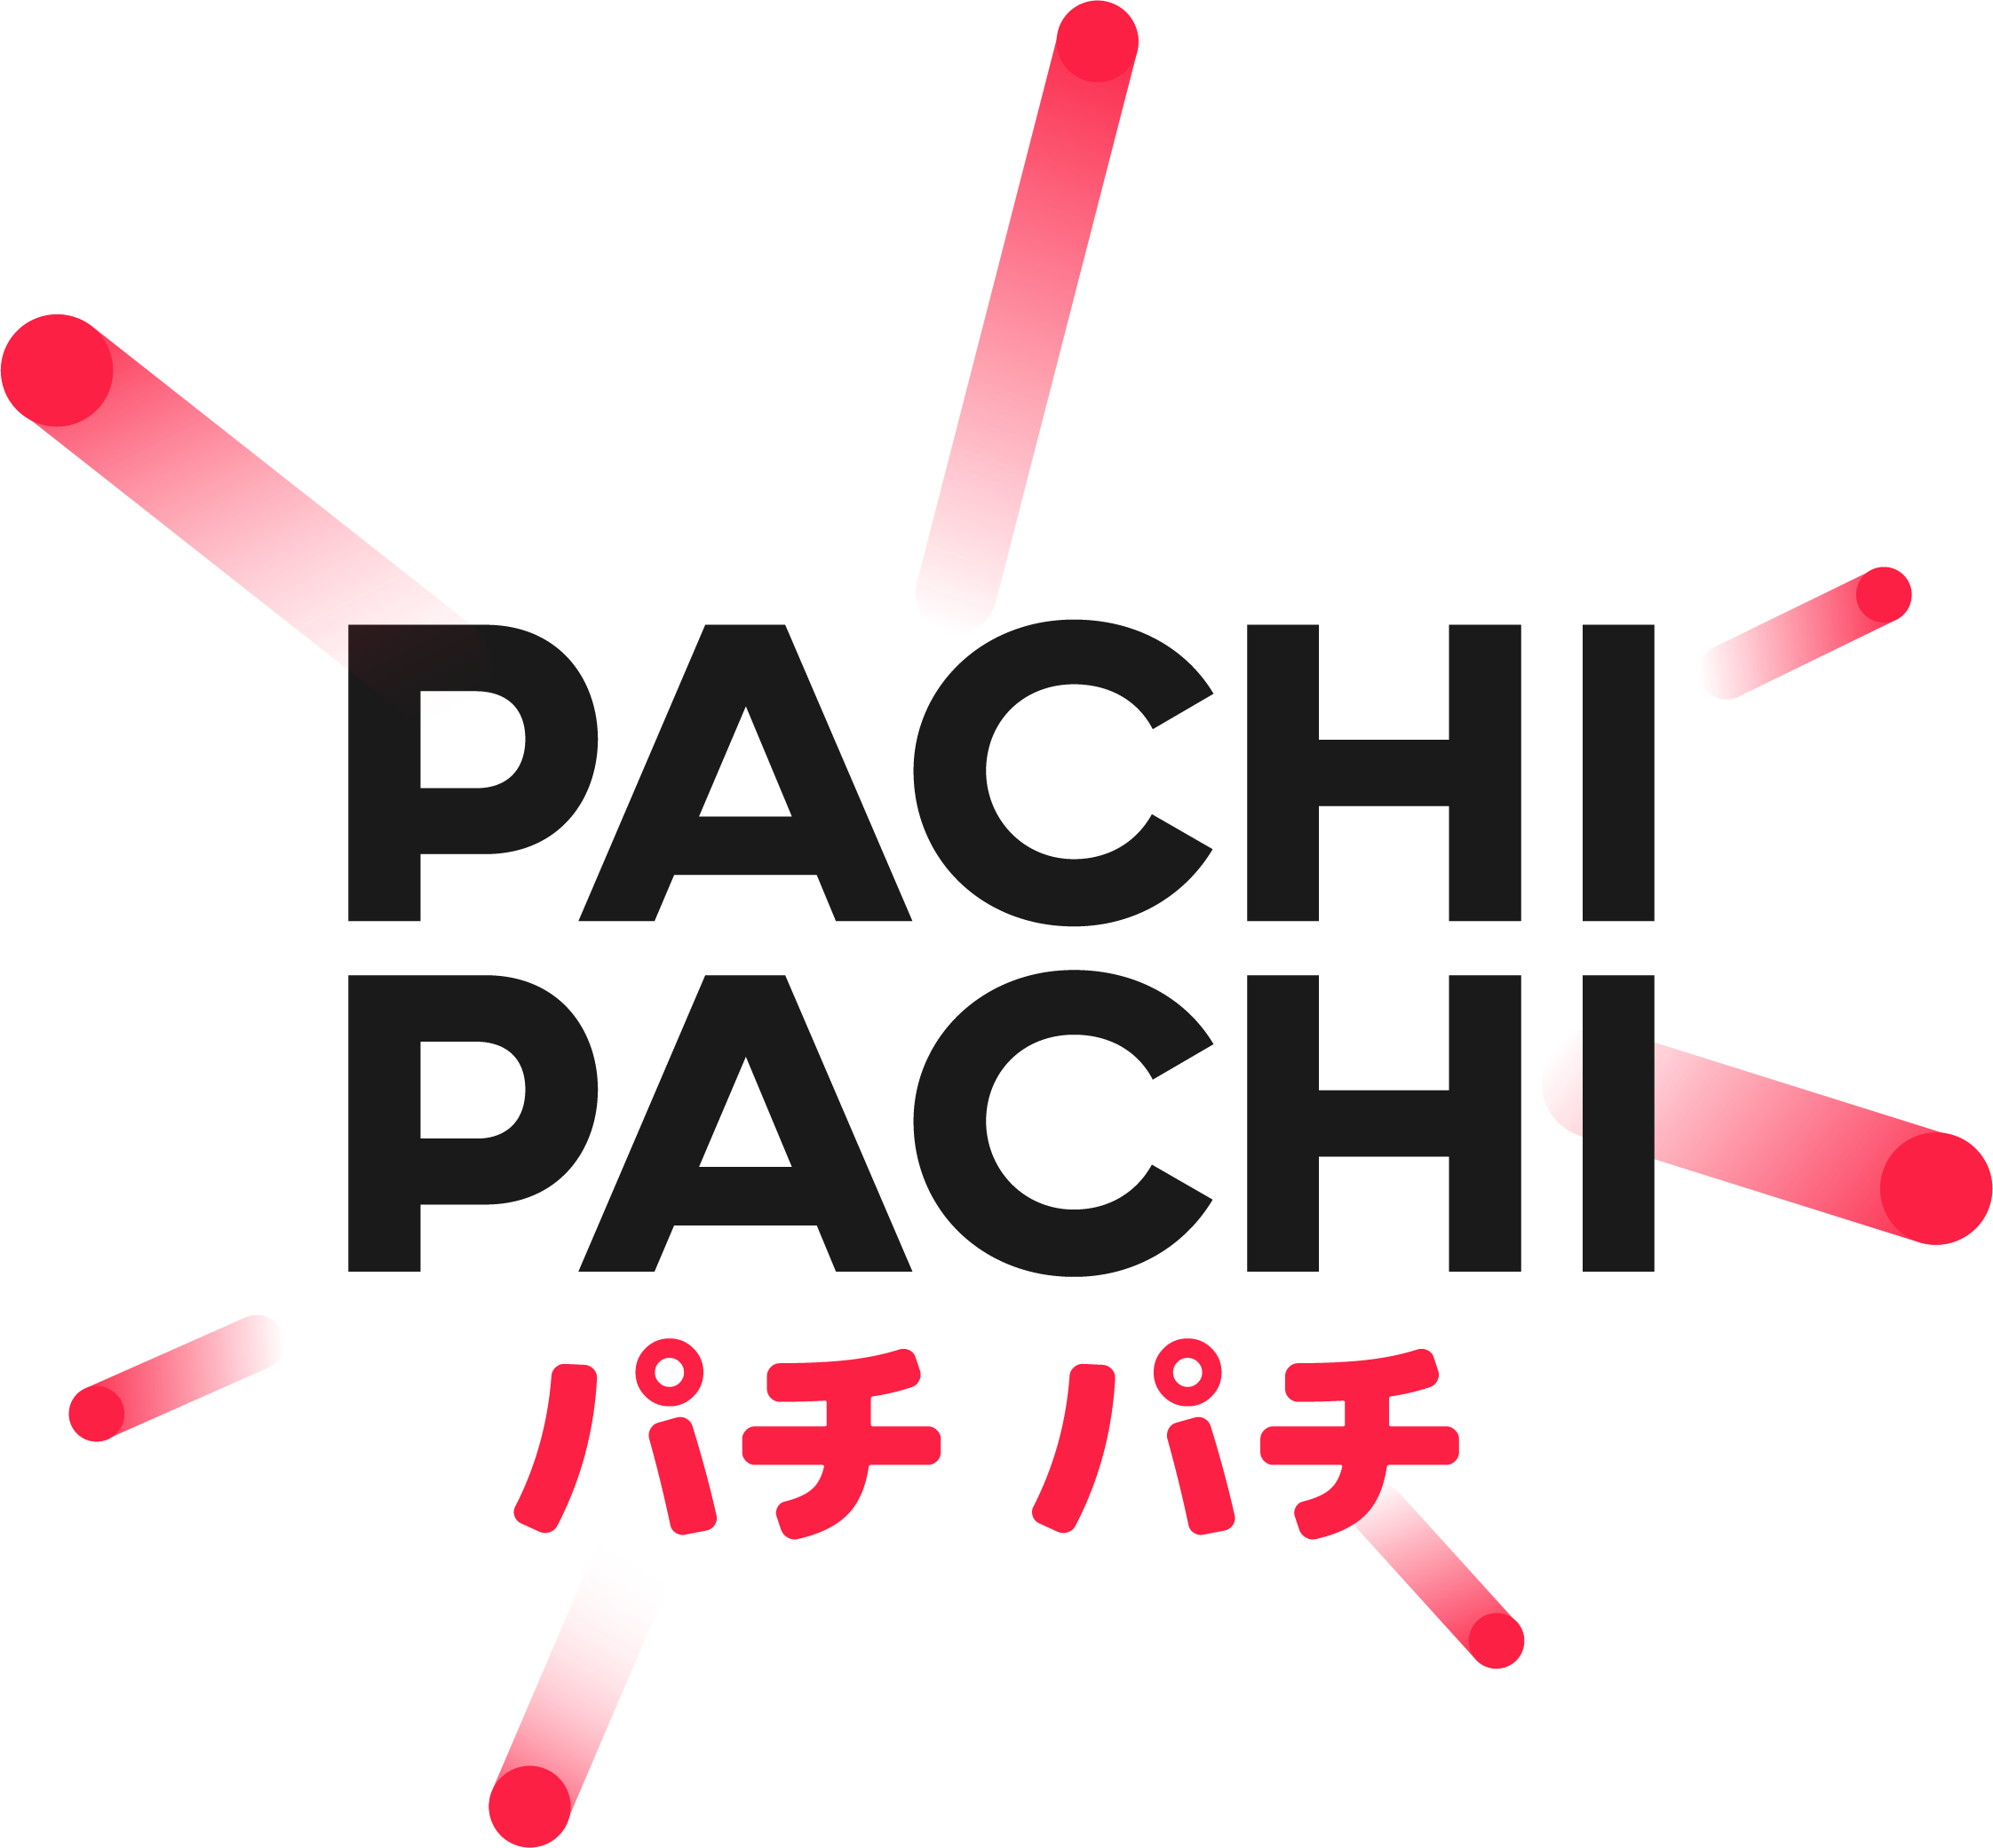 PachPachi Casino Logo